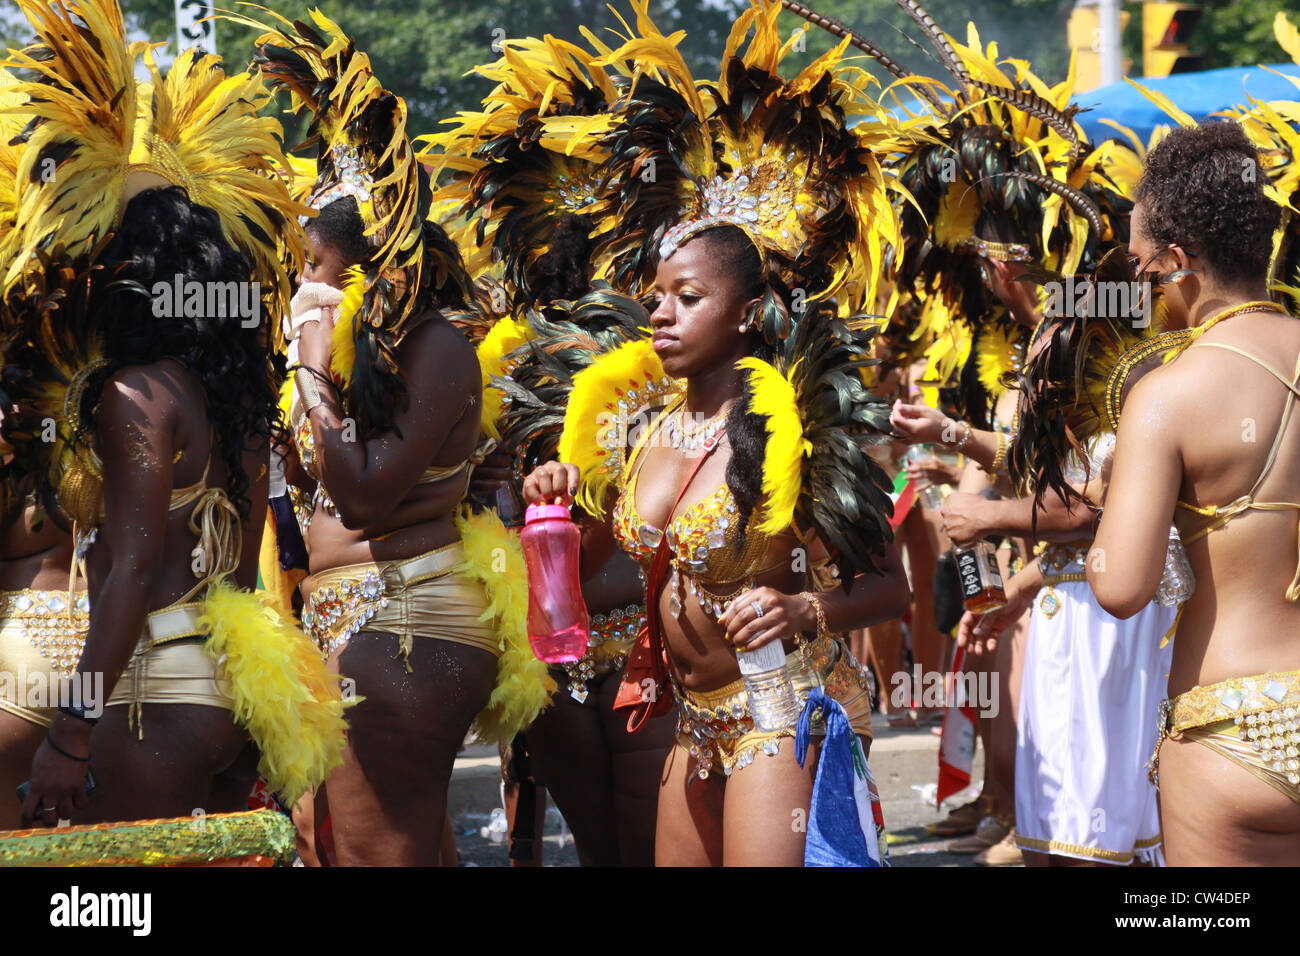 the Gran mas at the Scotiabank Caribbean Festival. Caribana, Caribbean Festival, Toronto, Jamaica, Trinidad, Barbados Stock Photo